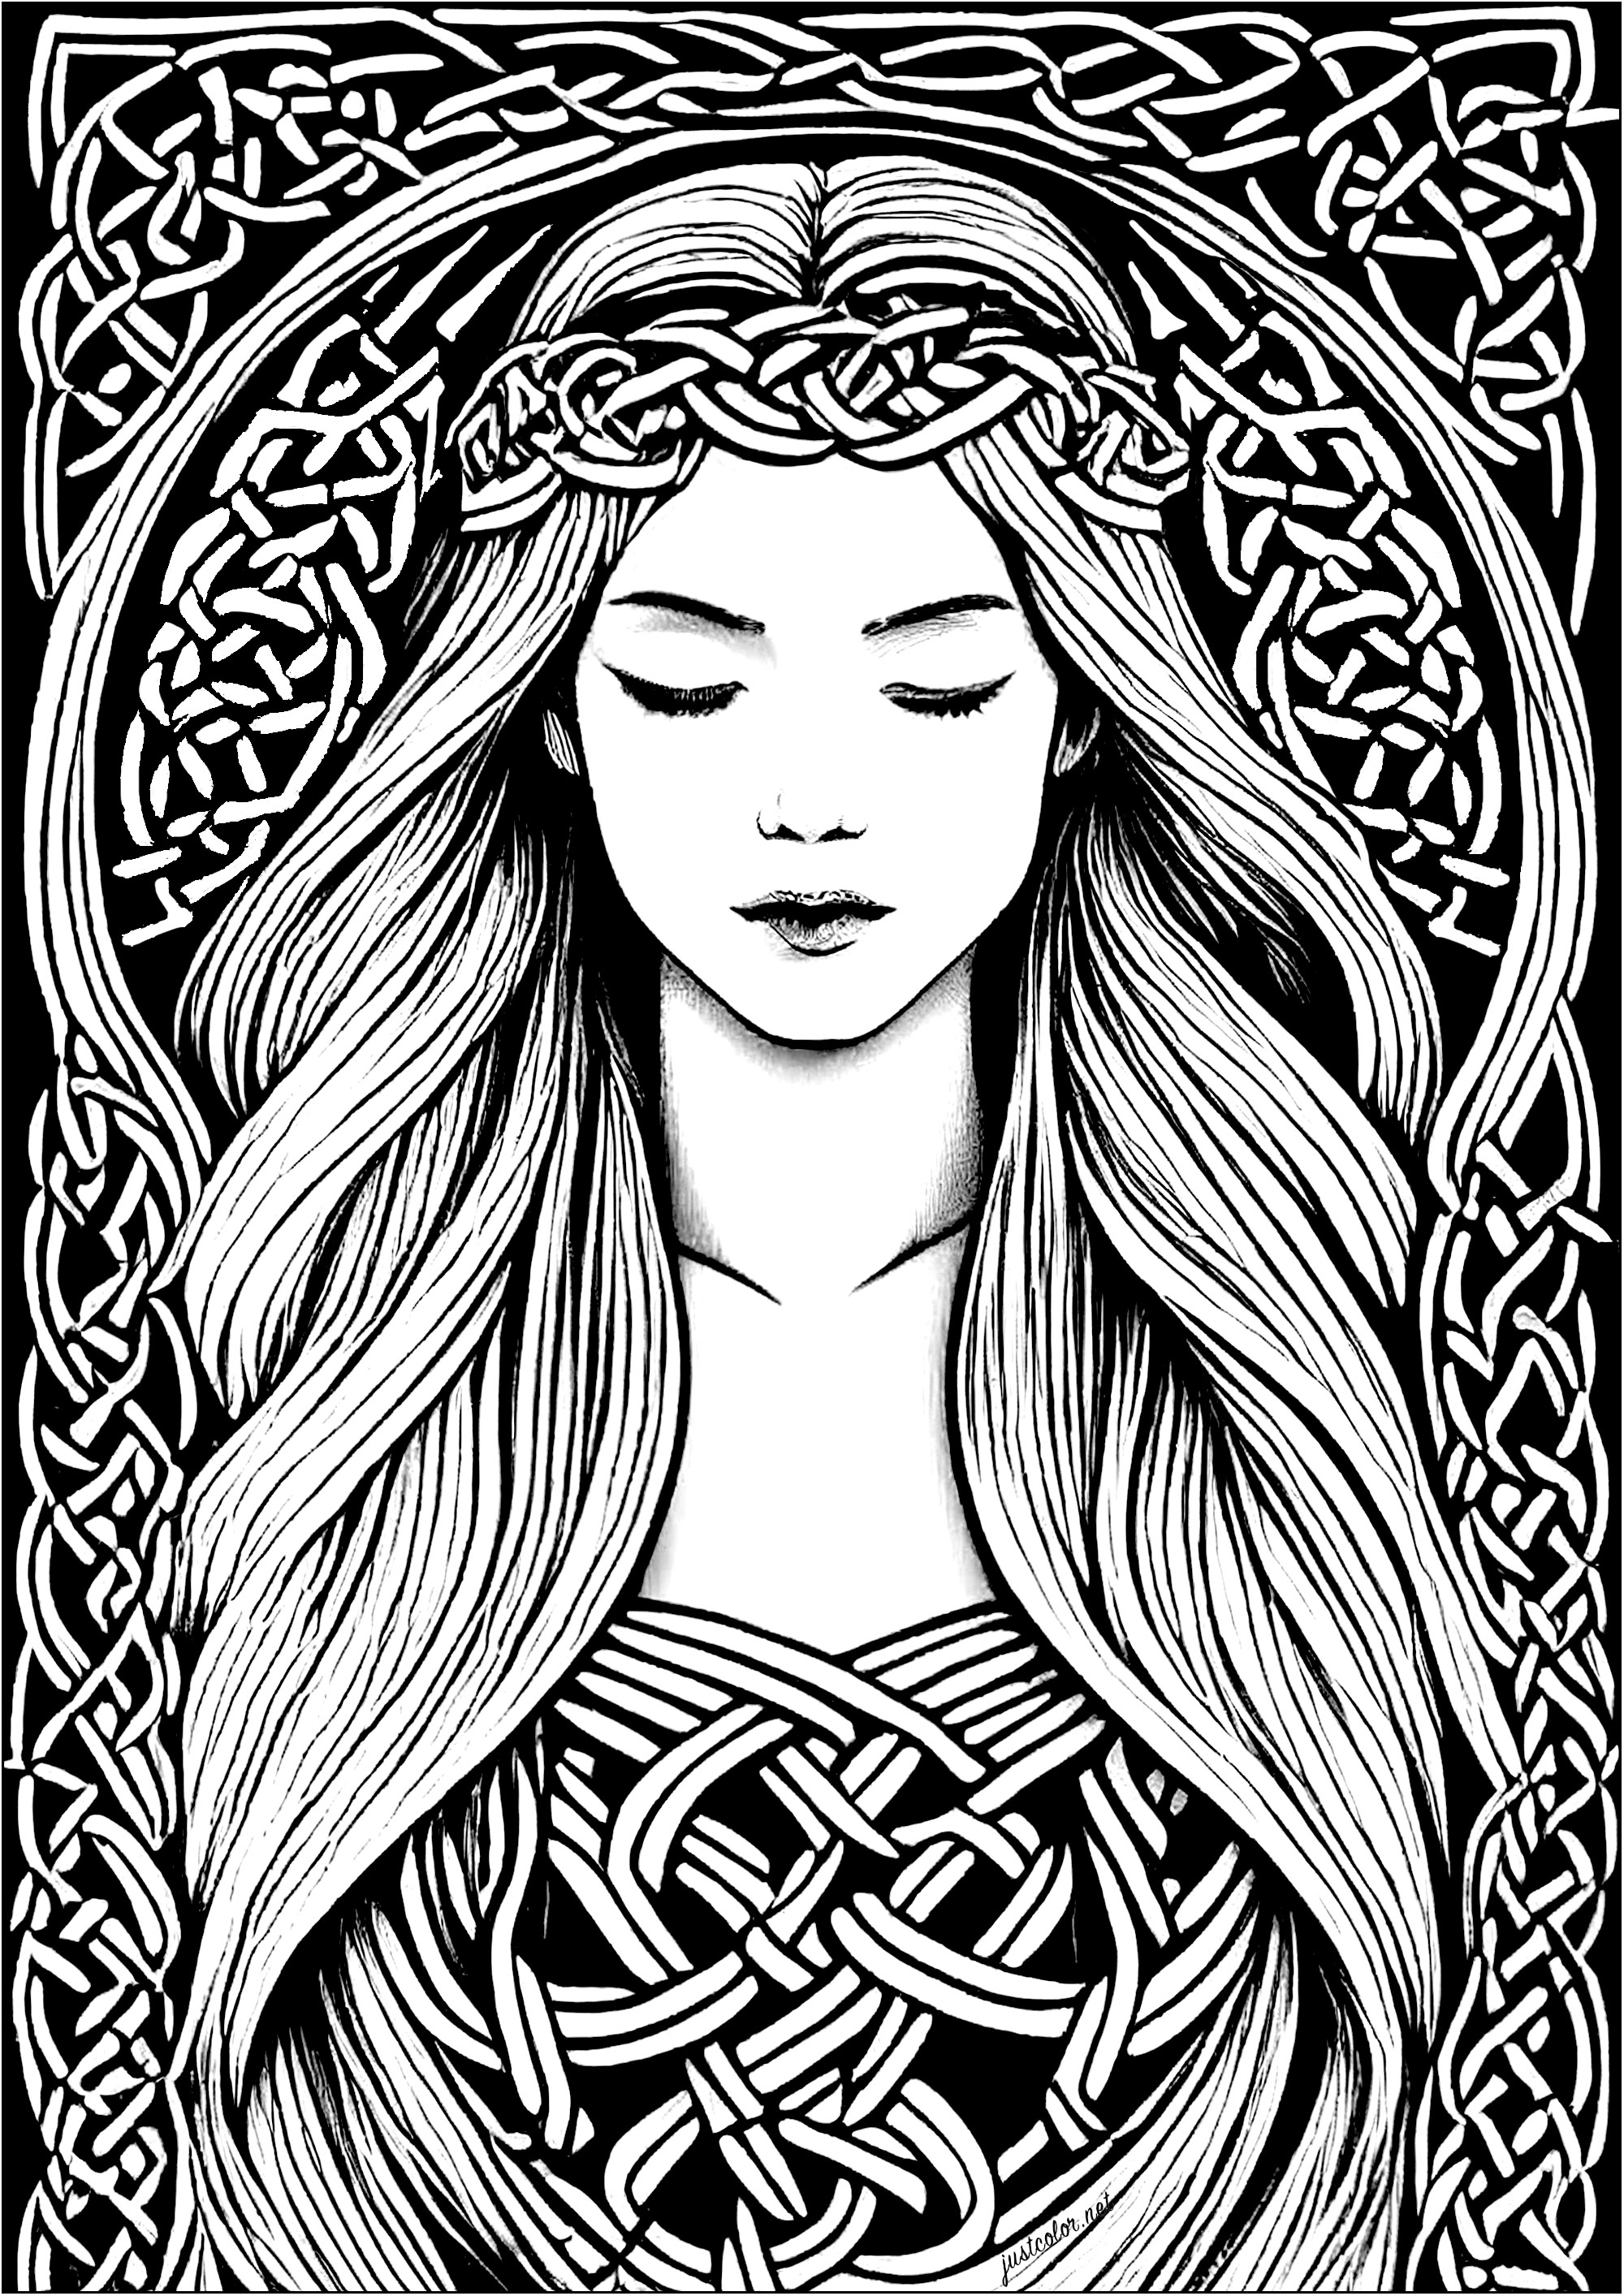 Pagina da colorare di una giovane donna addormentata, ispirata all'arte celtica. I motivi presenti in questo disegno si ispirano ai motivi celtici, caratterizzati da complessità e forme vegetali simili a radici.